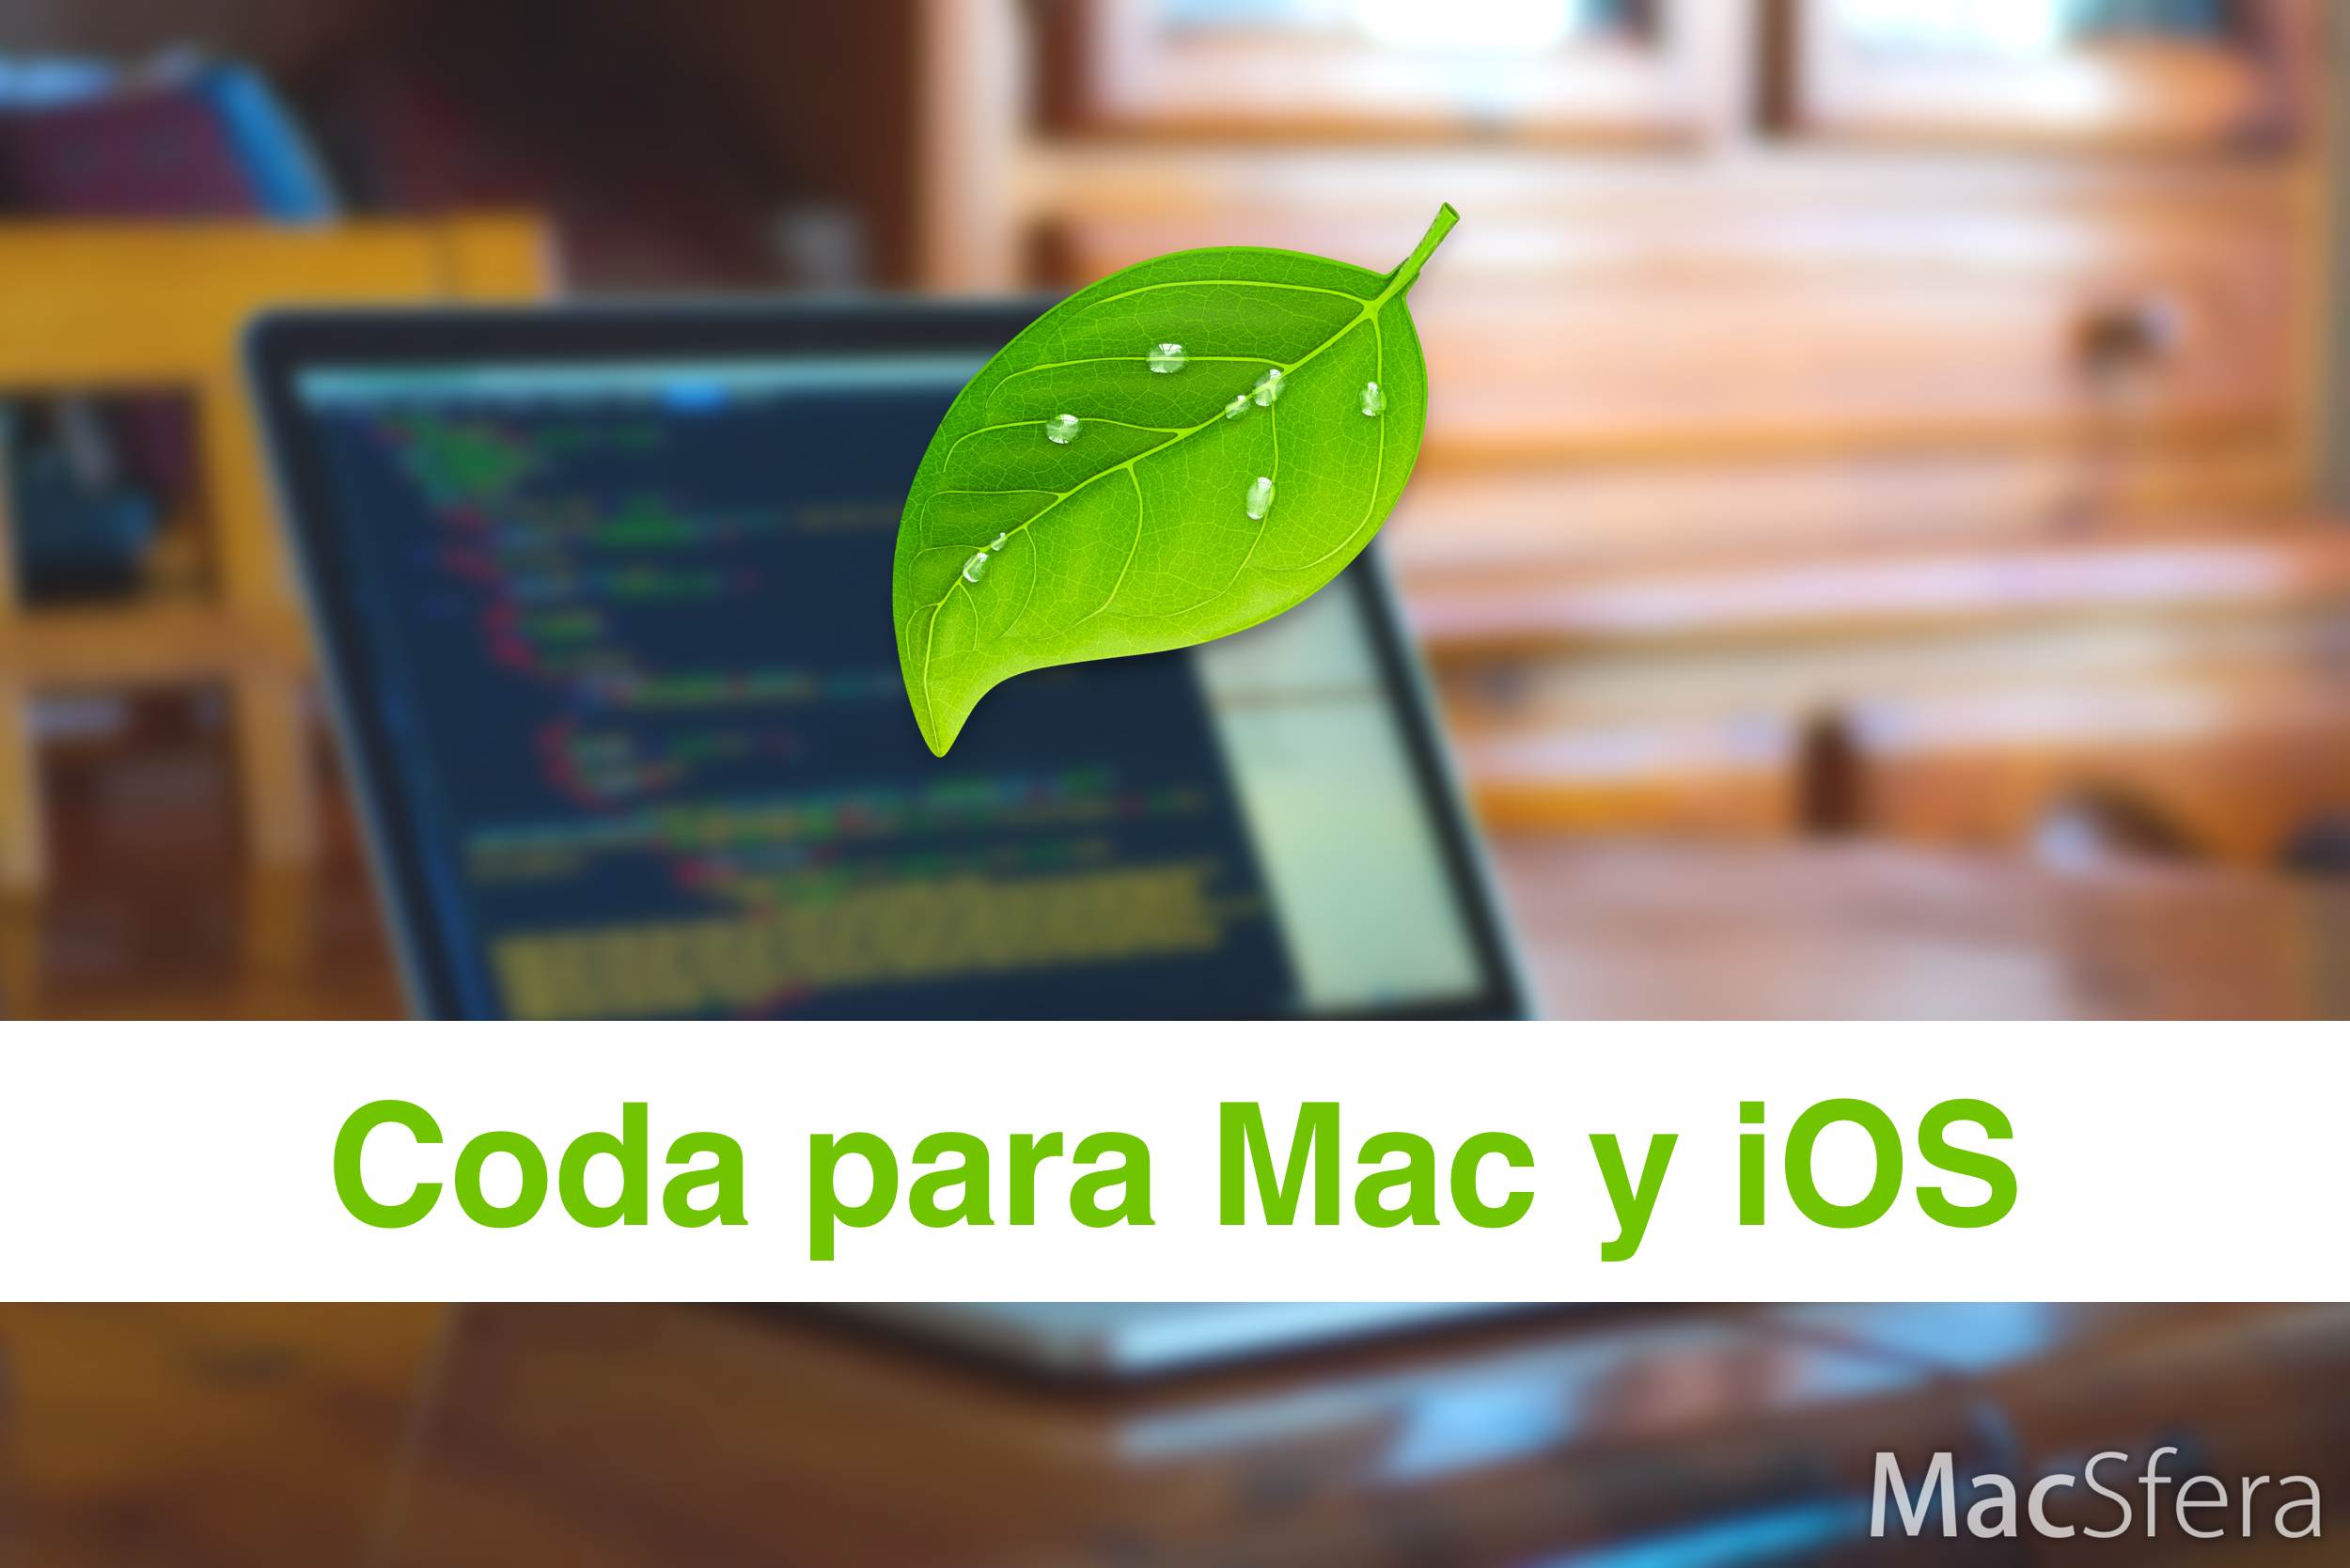 Coda para Mac y iOS